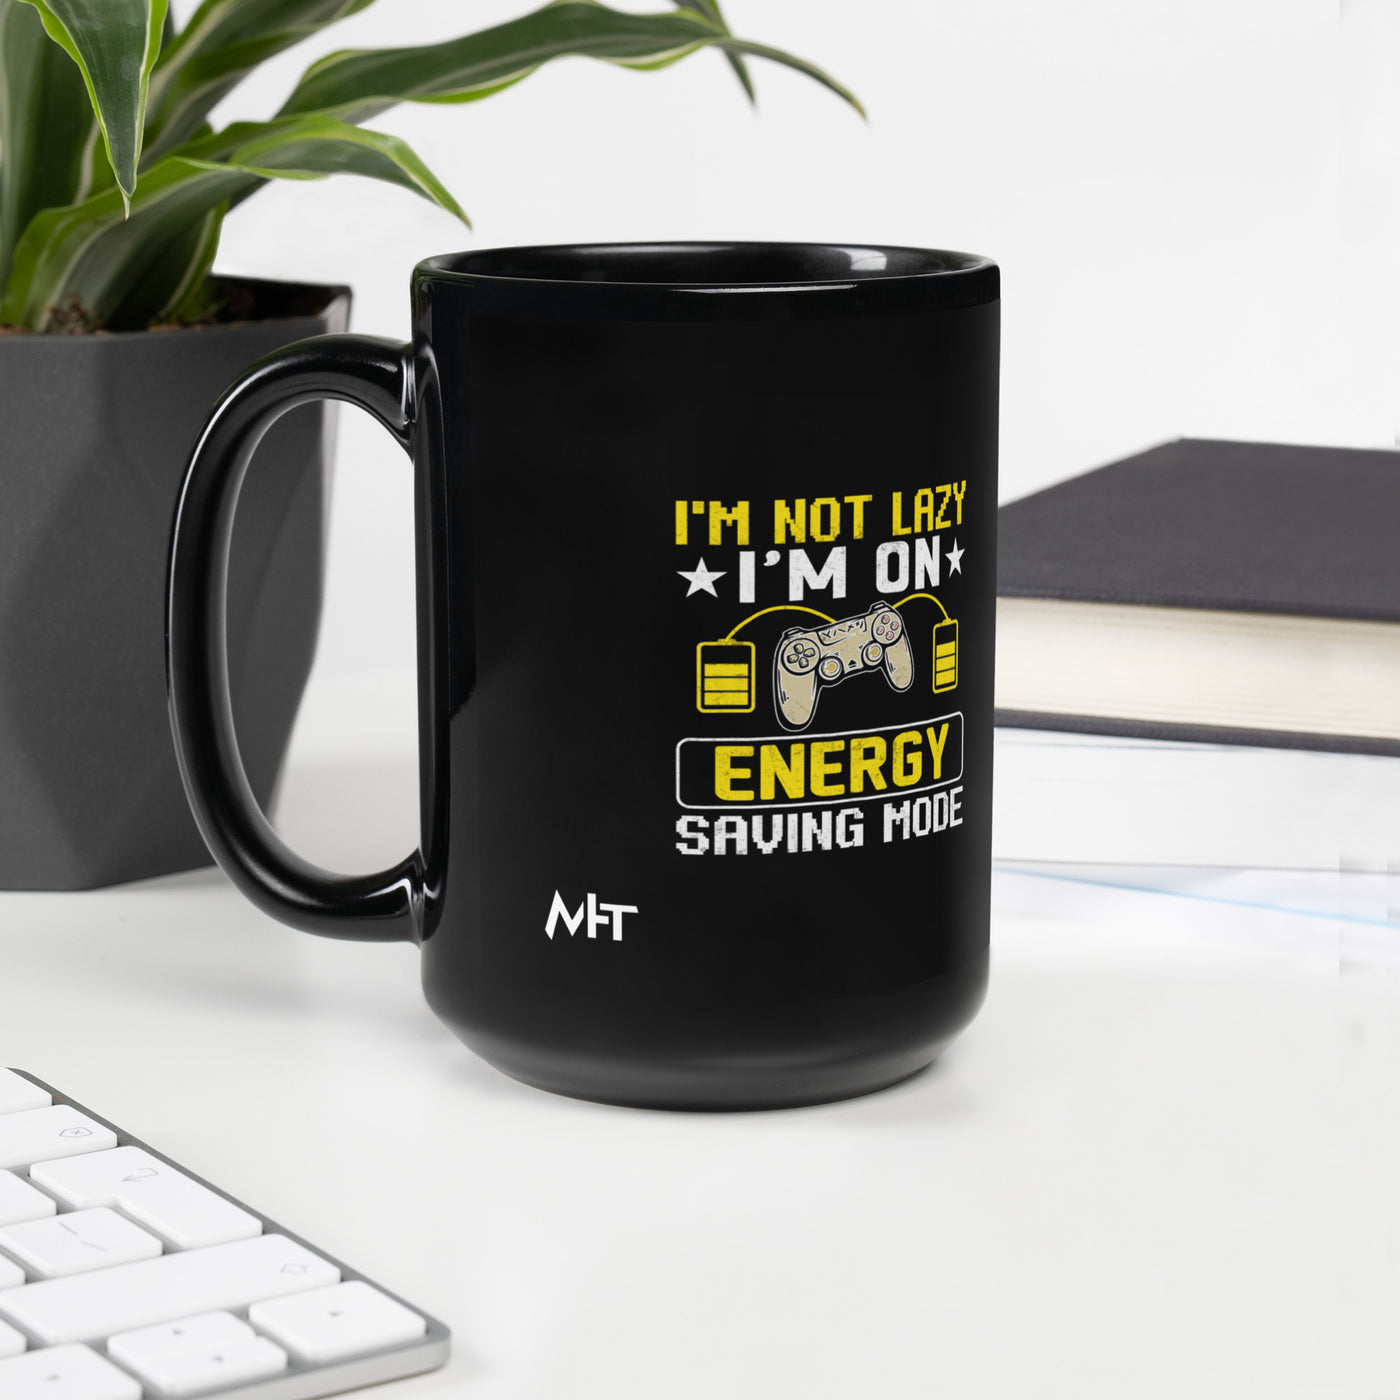 I am not Lazy, I am on Energy Saving Mode - Black Glossy Mug